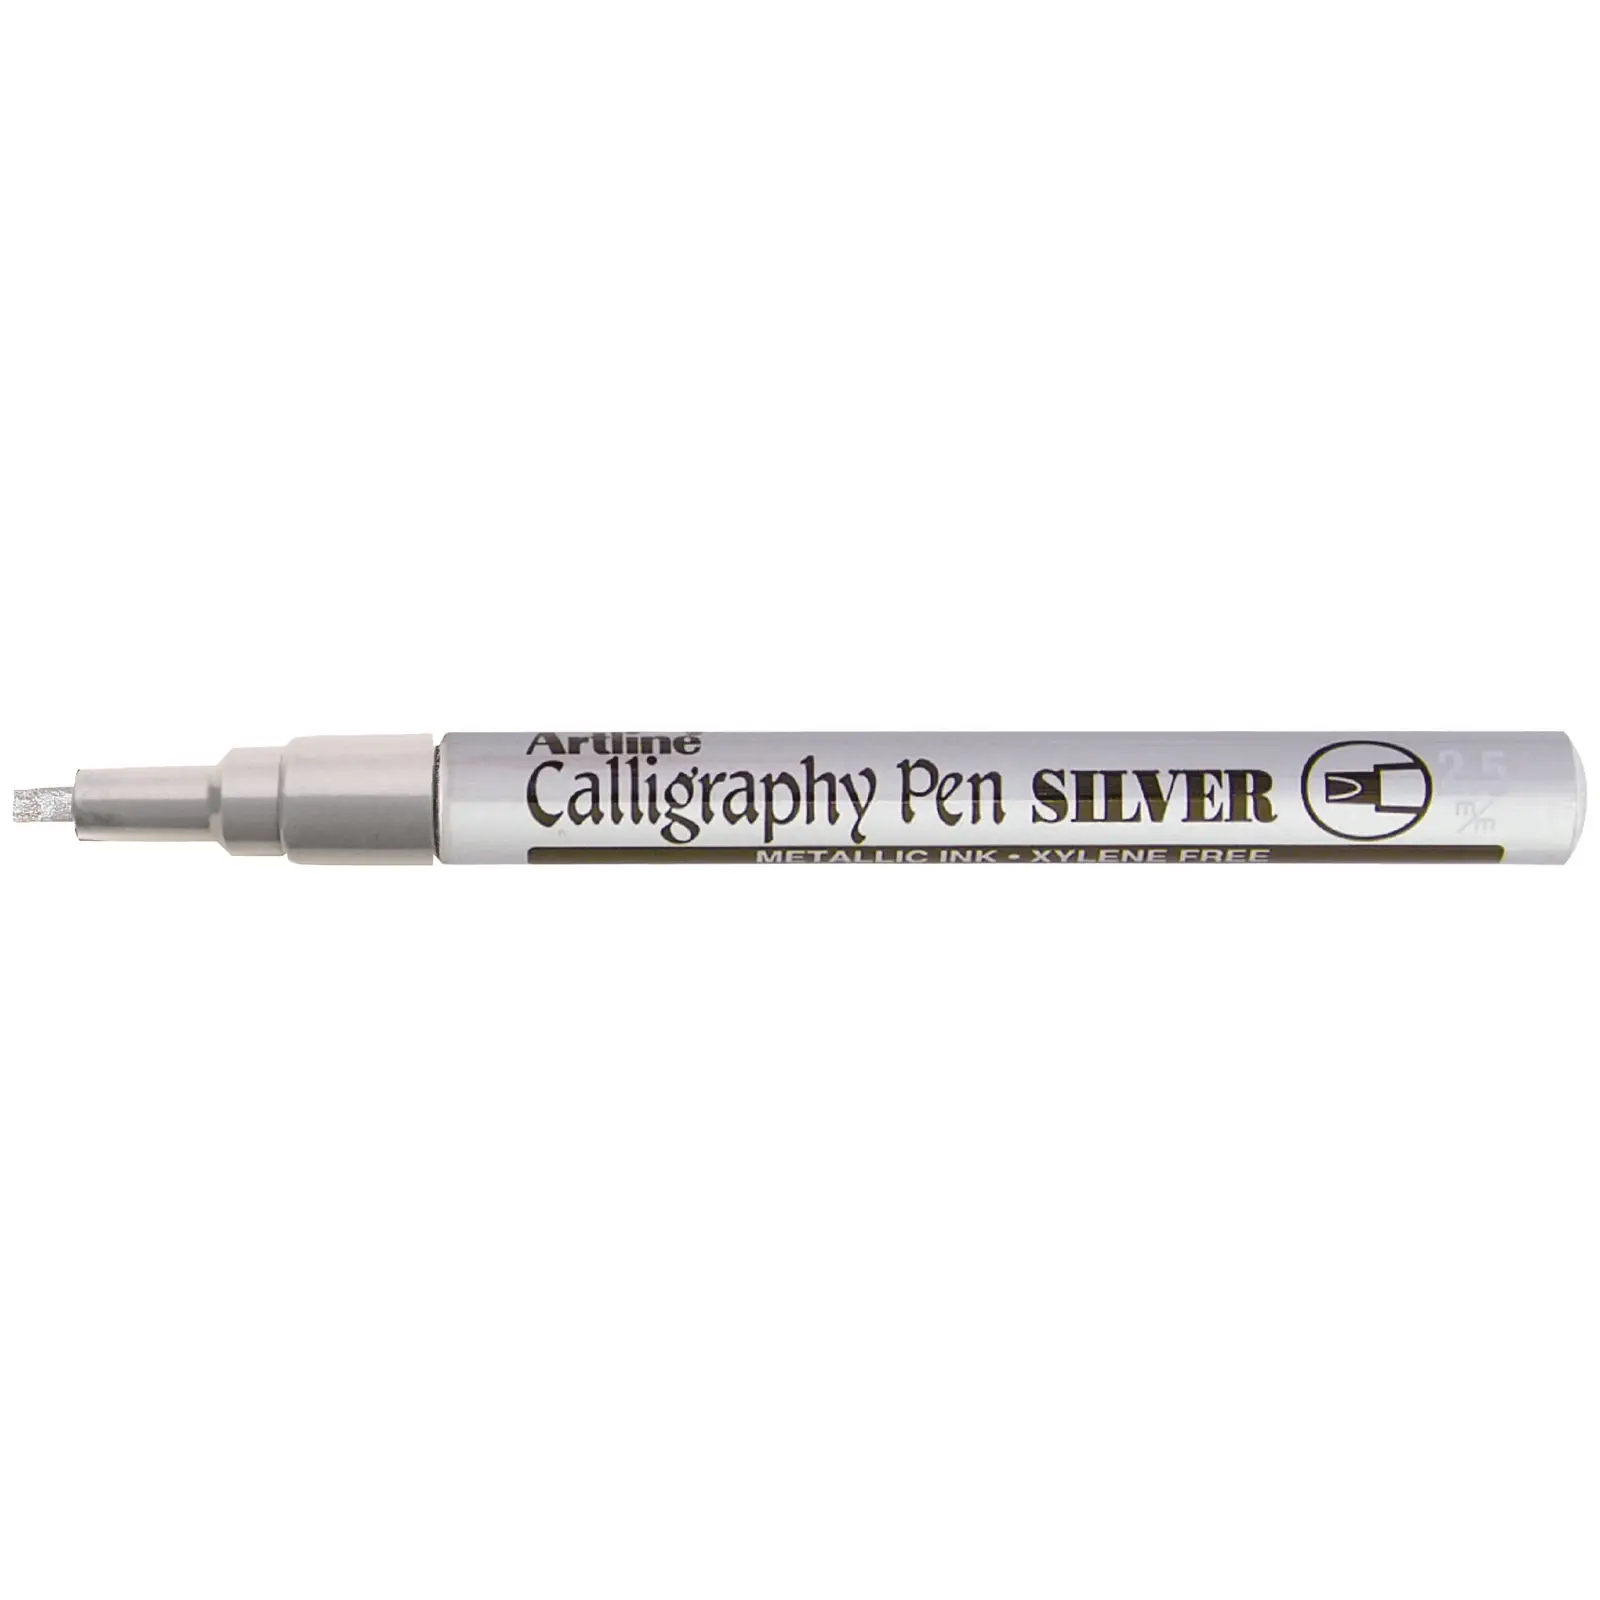 Artline 993 Calligraphy Pen